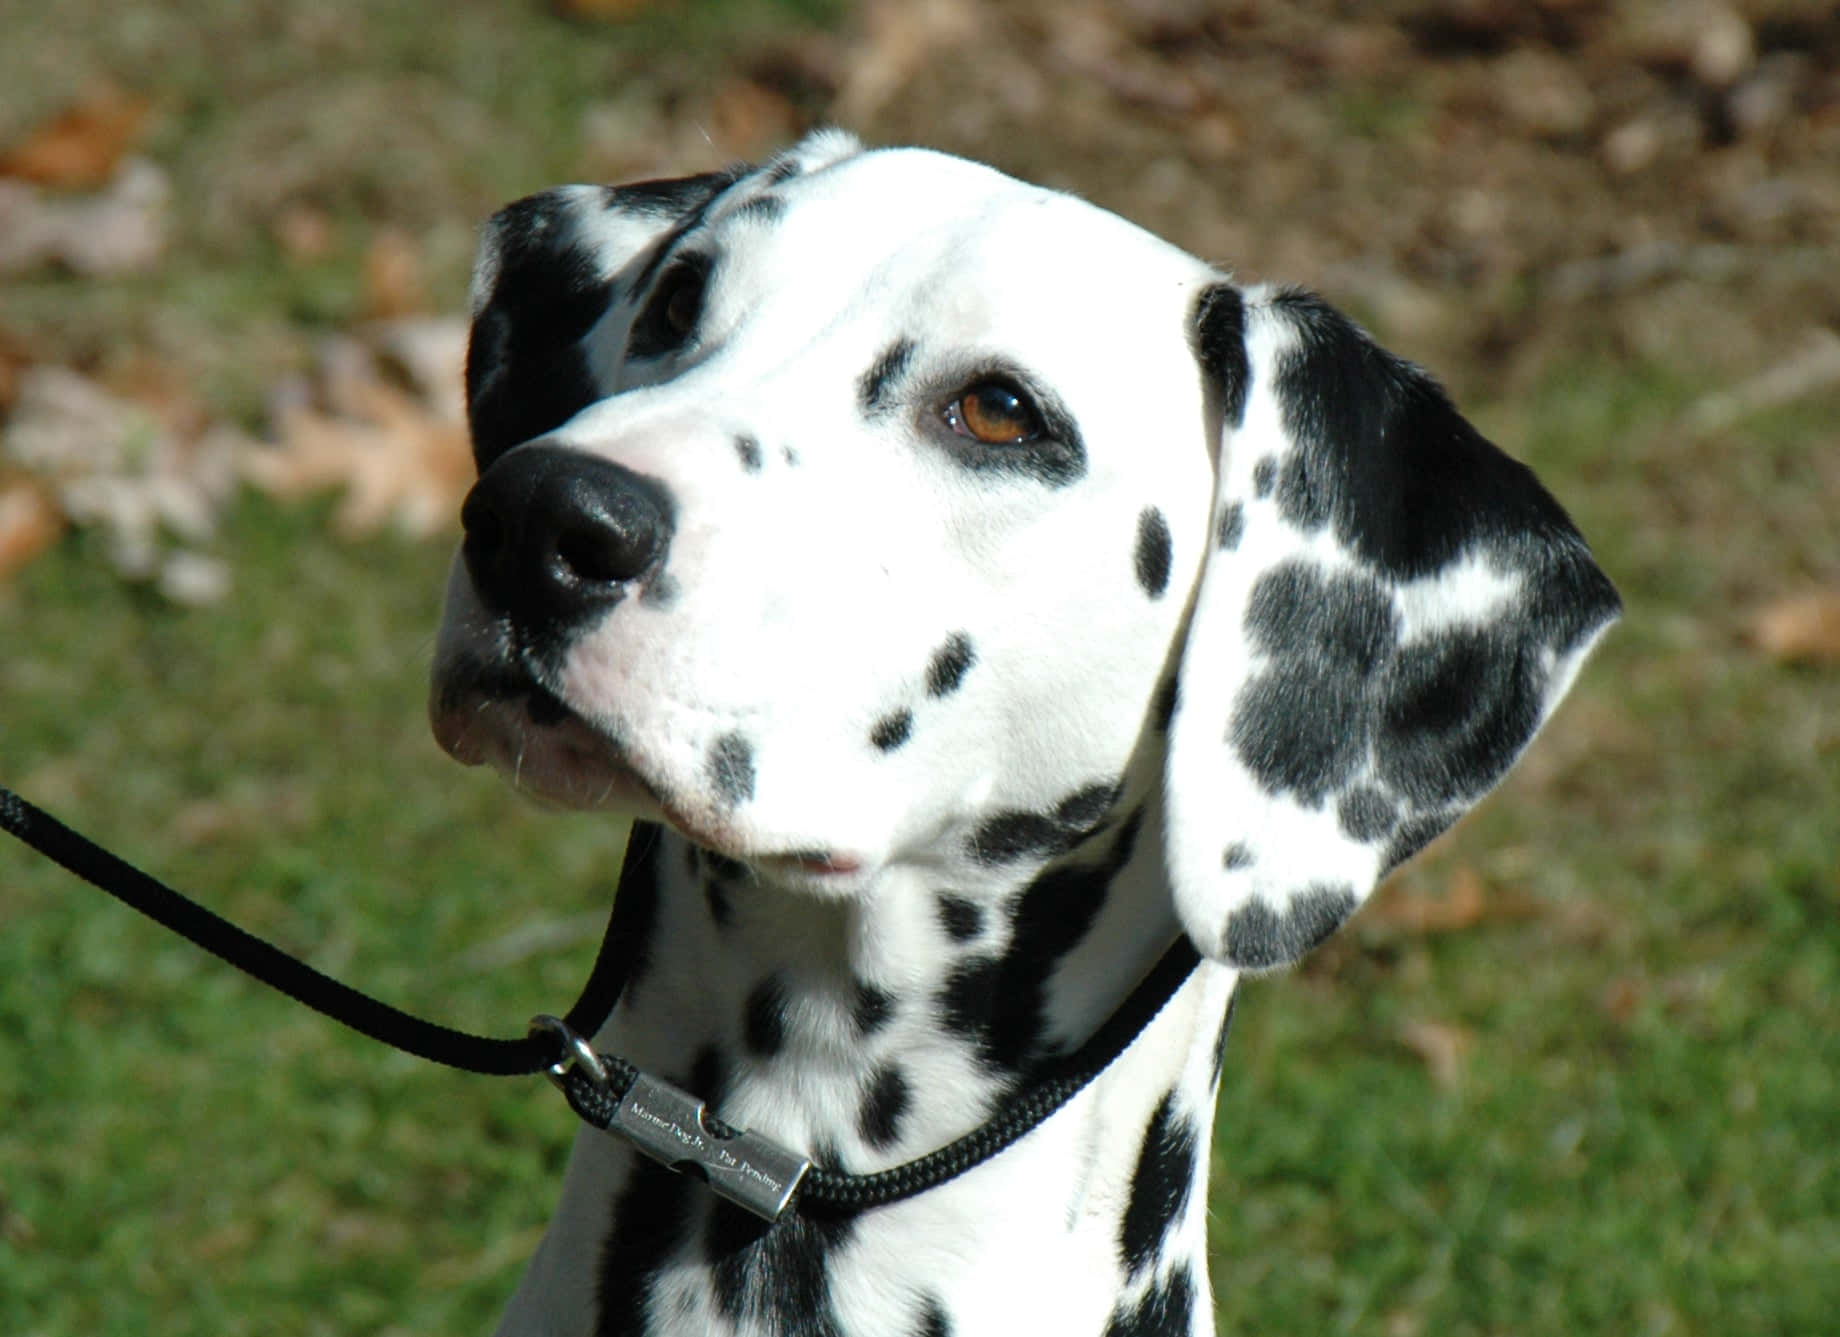 This beautiful dalmatian pup enjoys a sunny day